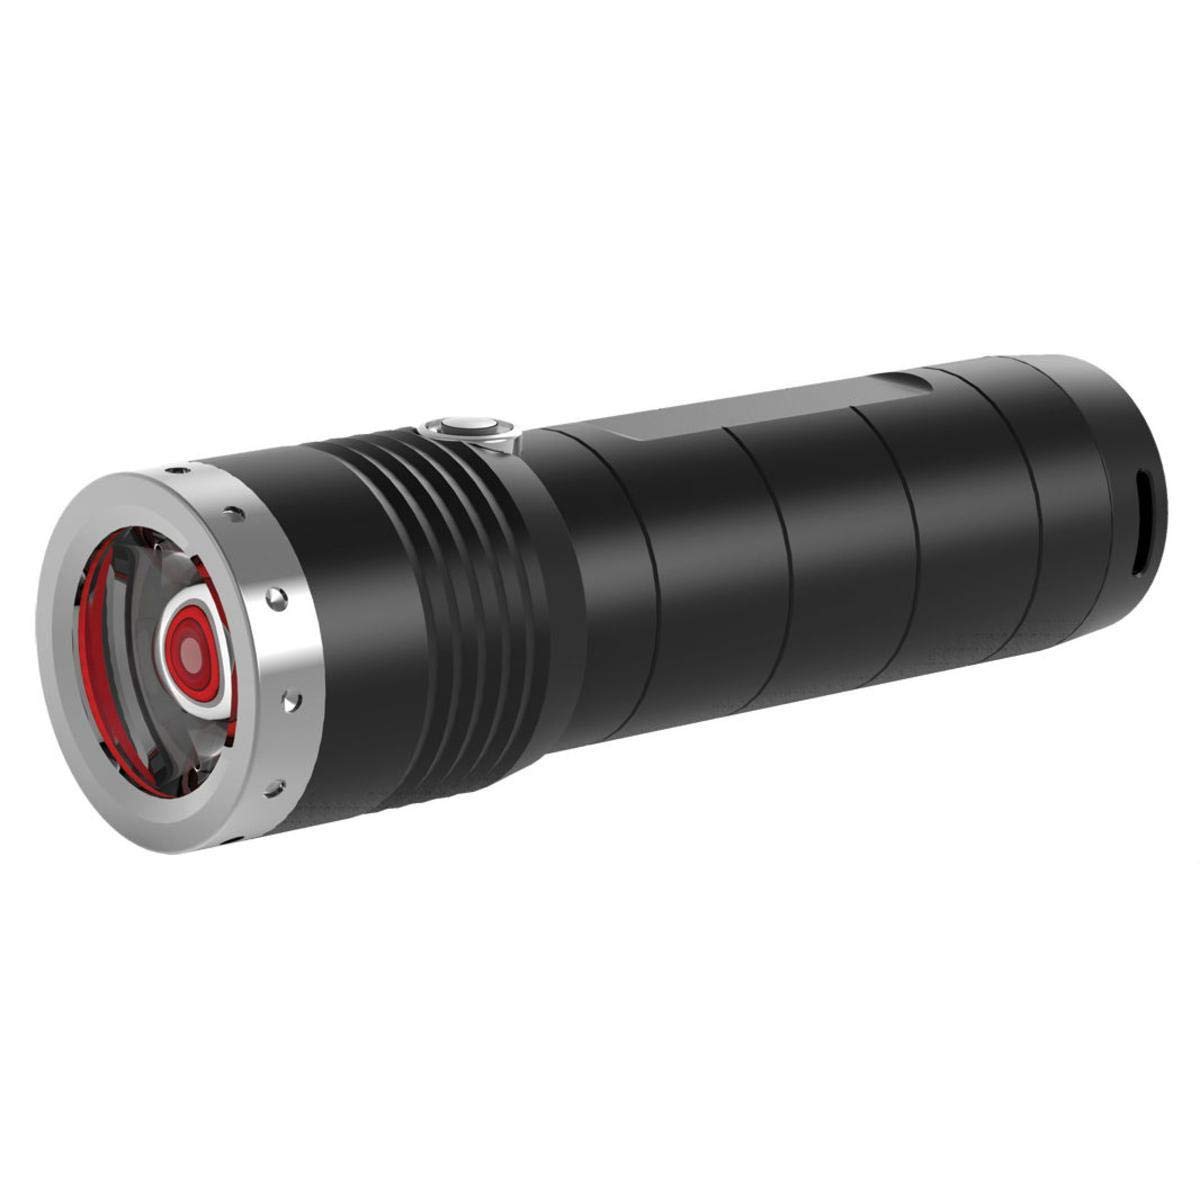 Ledlenser MT6 LED-Taschenlampe, Outdoor, fokussierbar, 600 Lumen, 260 Meter Leuchtweite, mit Batterie, Transportsicherung, 1 Stk.